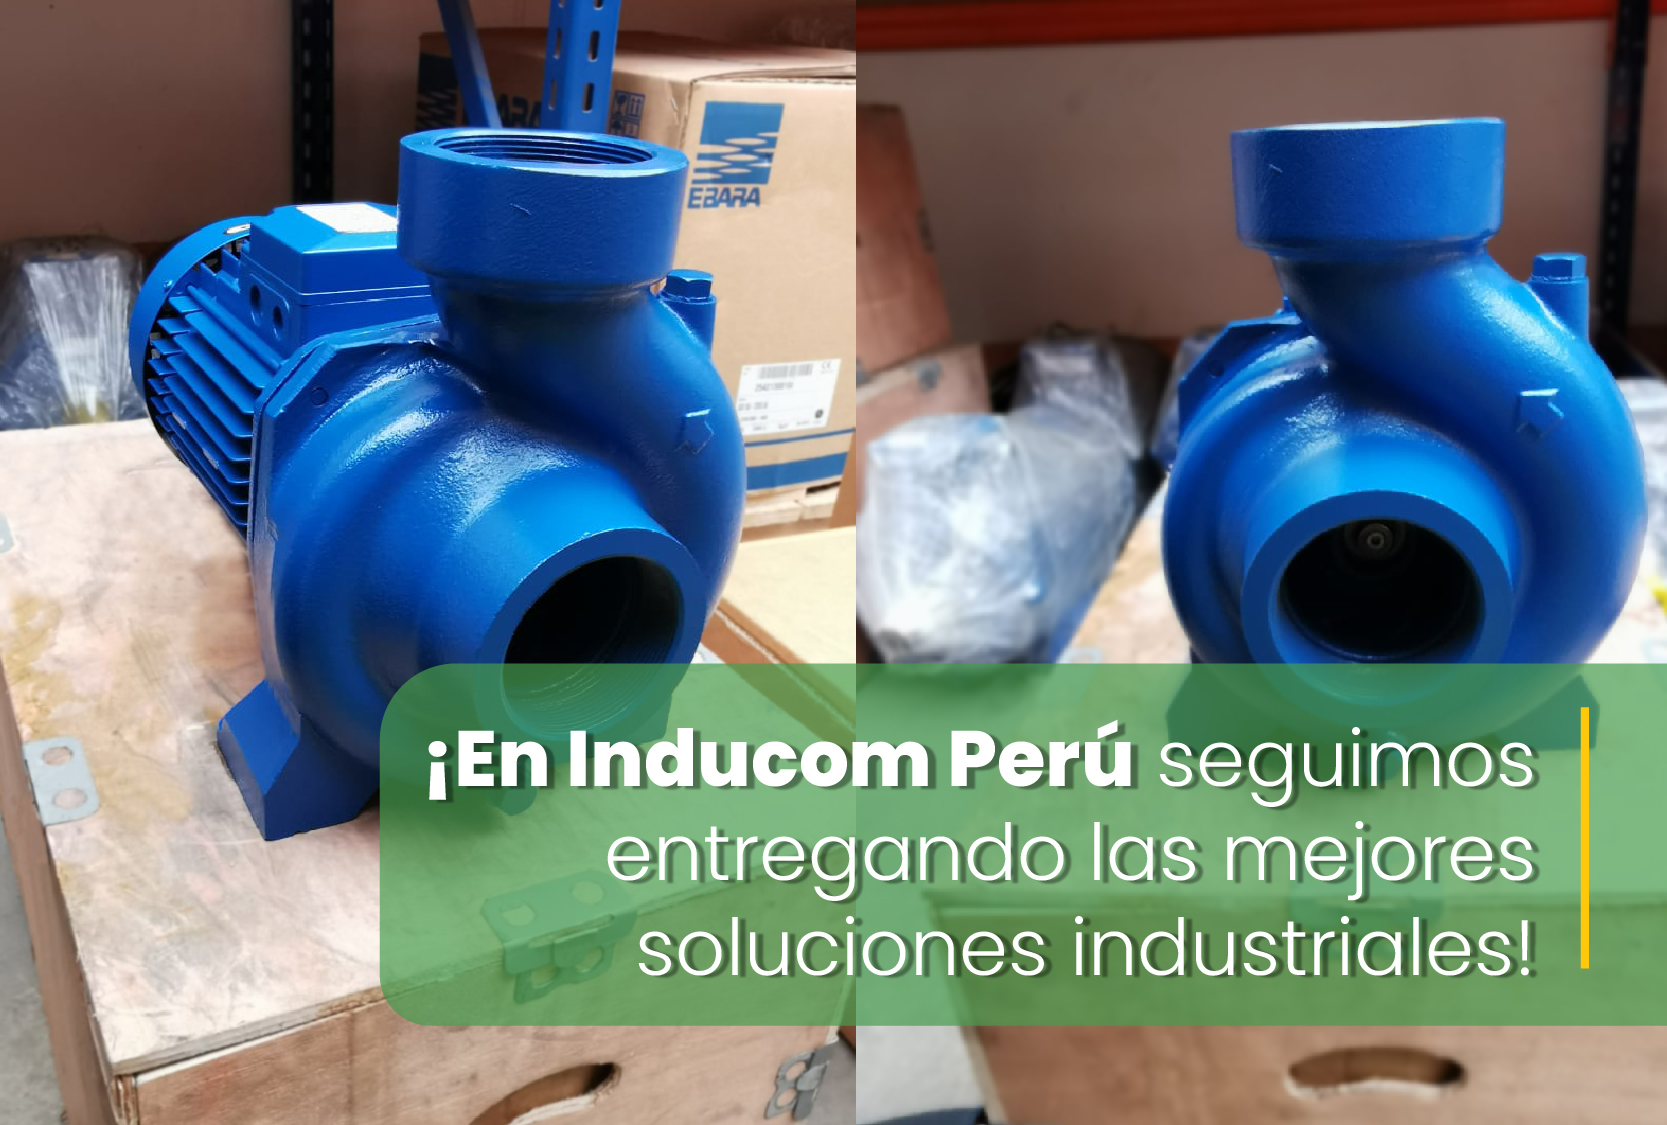 Inducom Perú: Soluciones industriales de calidad.